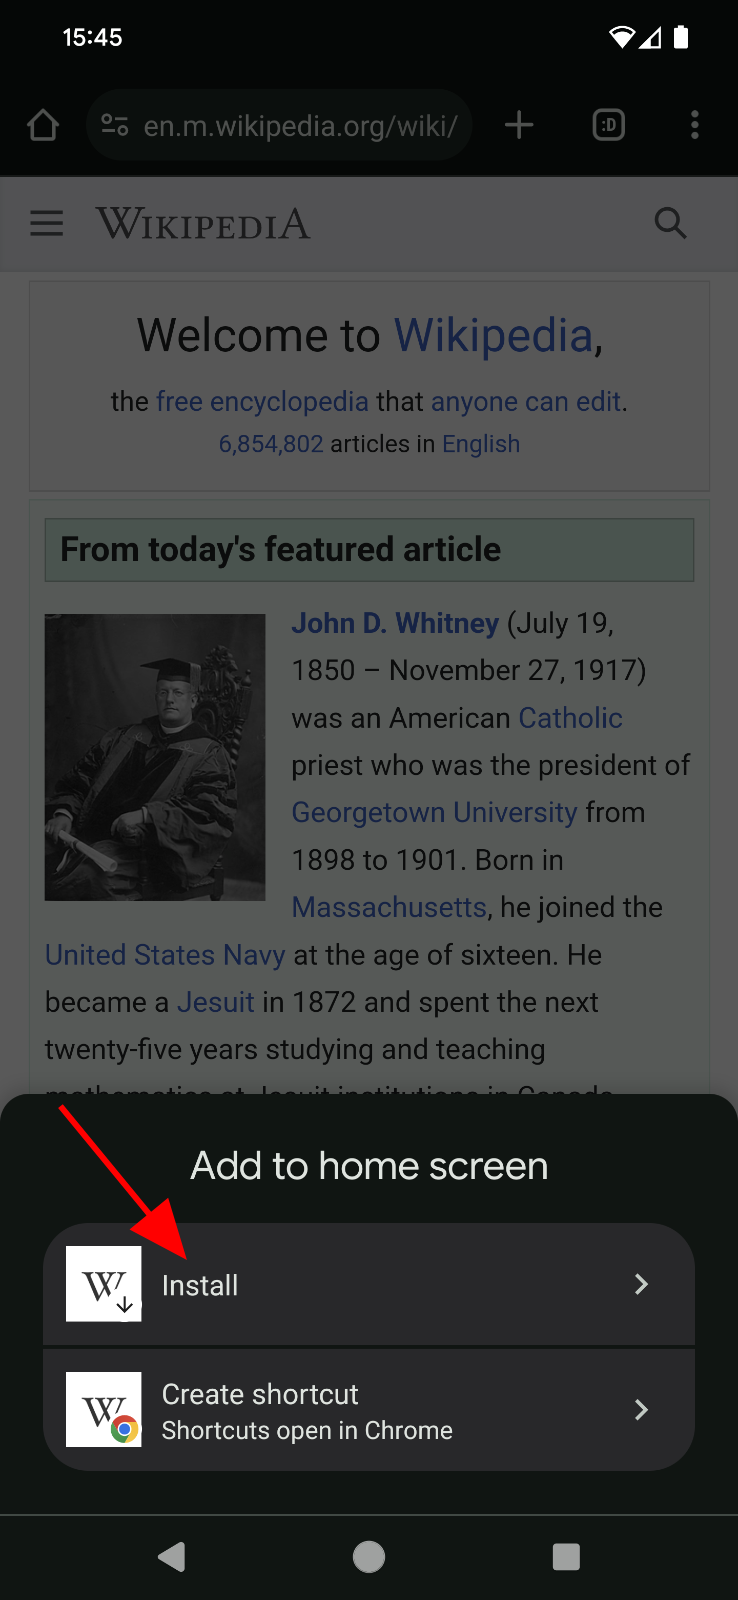 הוספה להנחיה במסך הבית באתר ויקיפדיה.